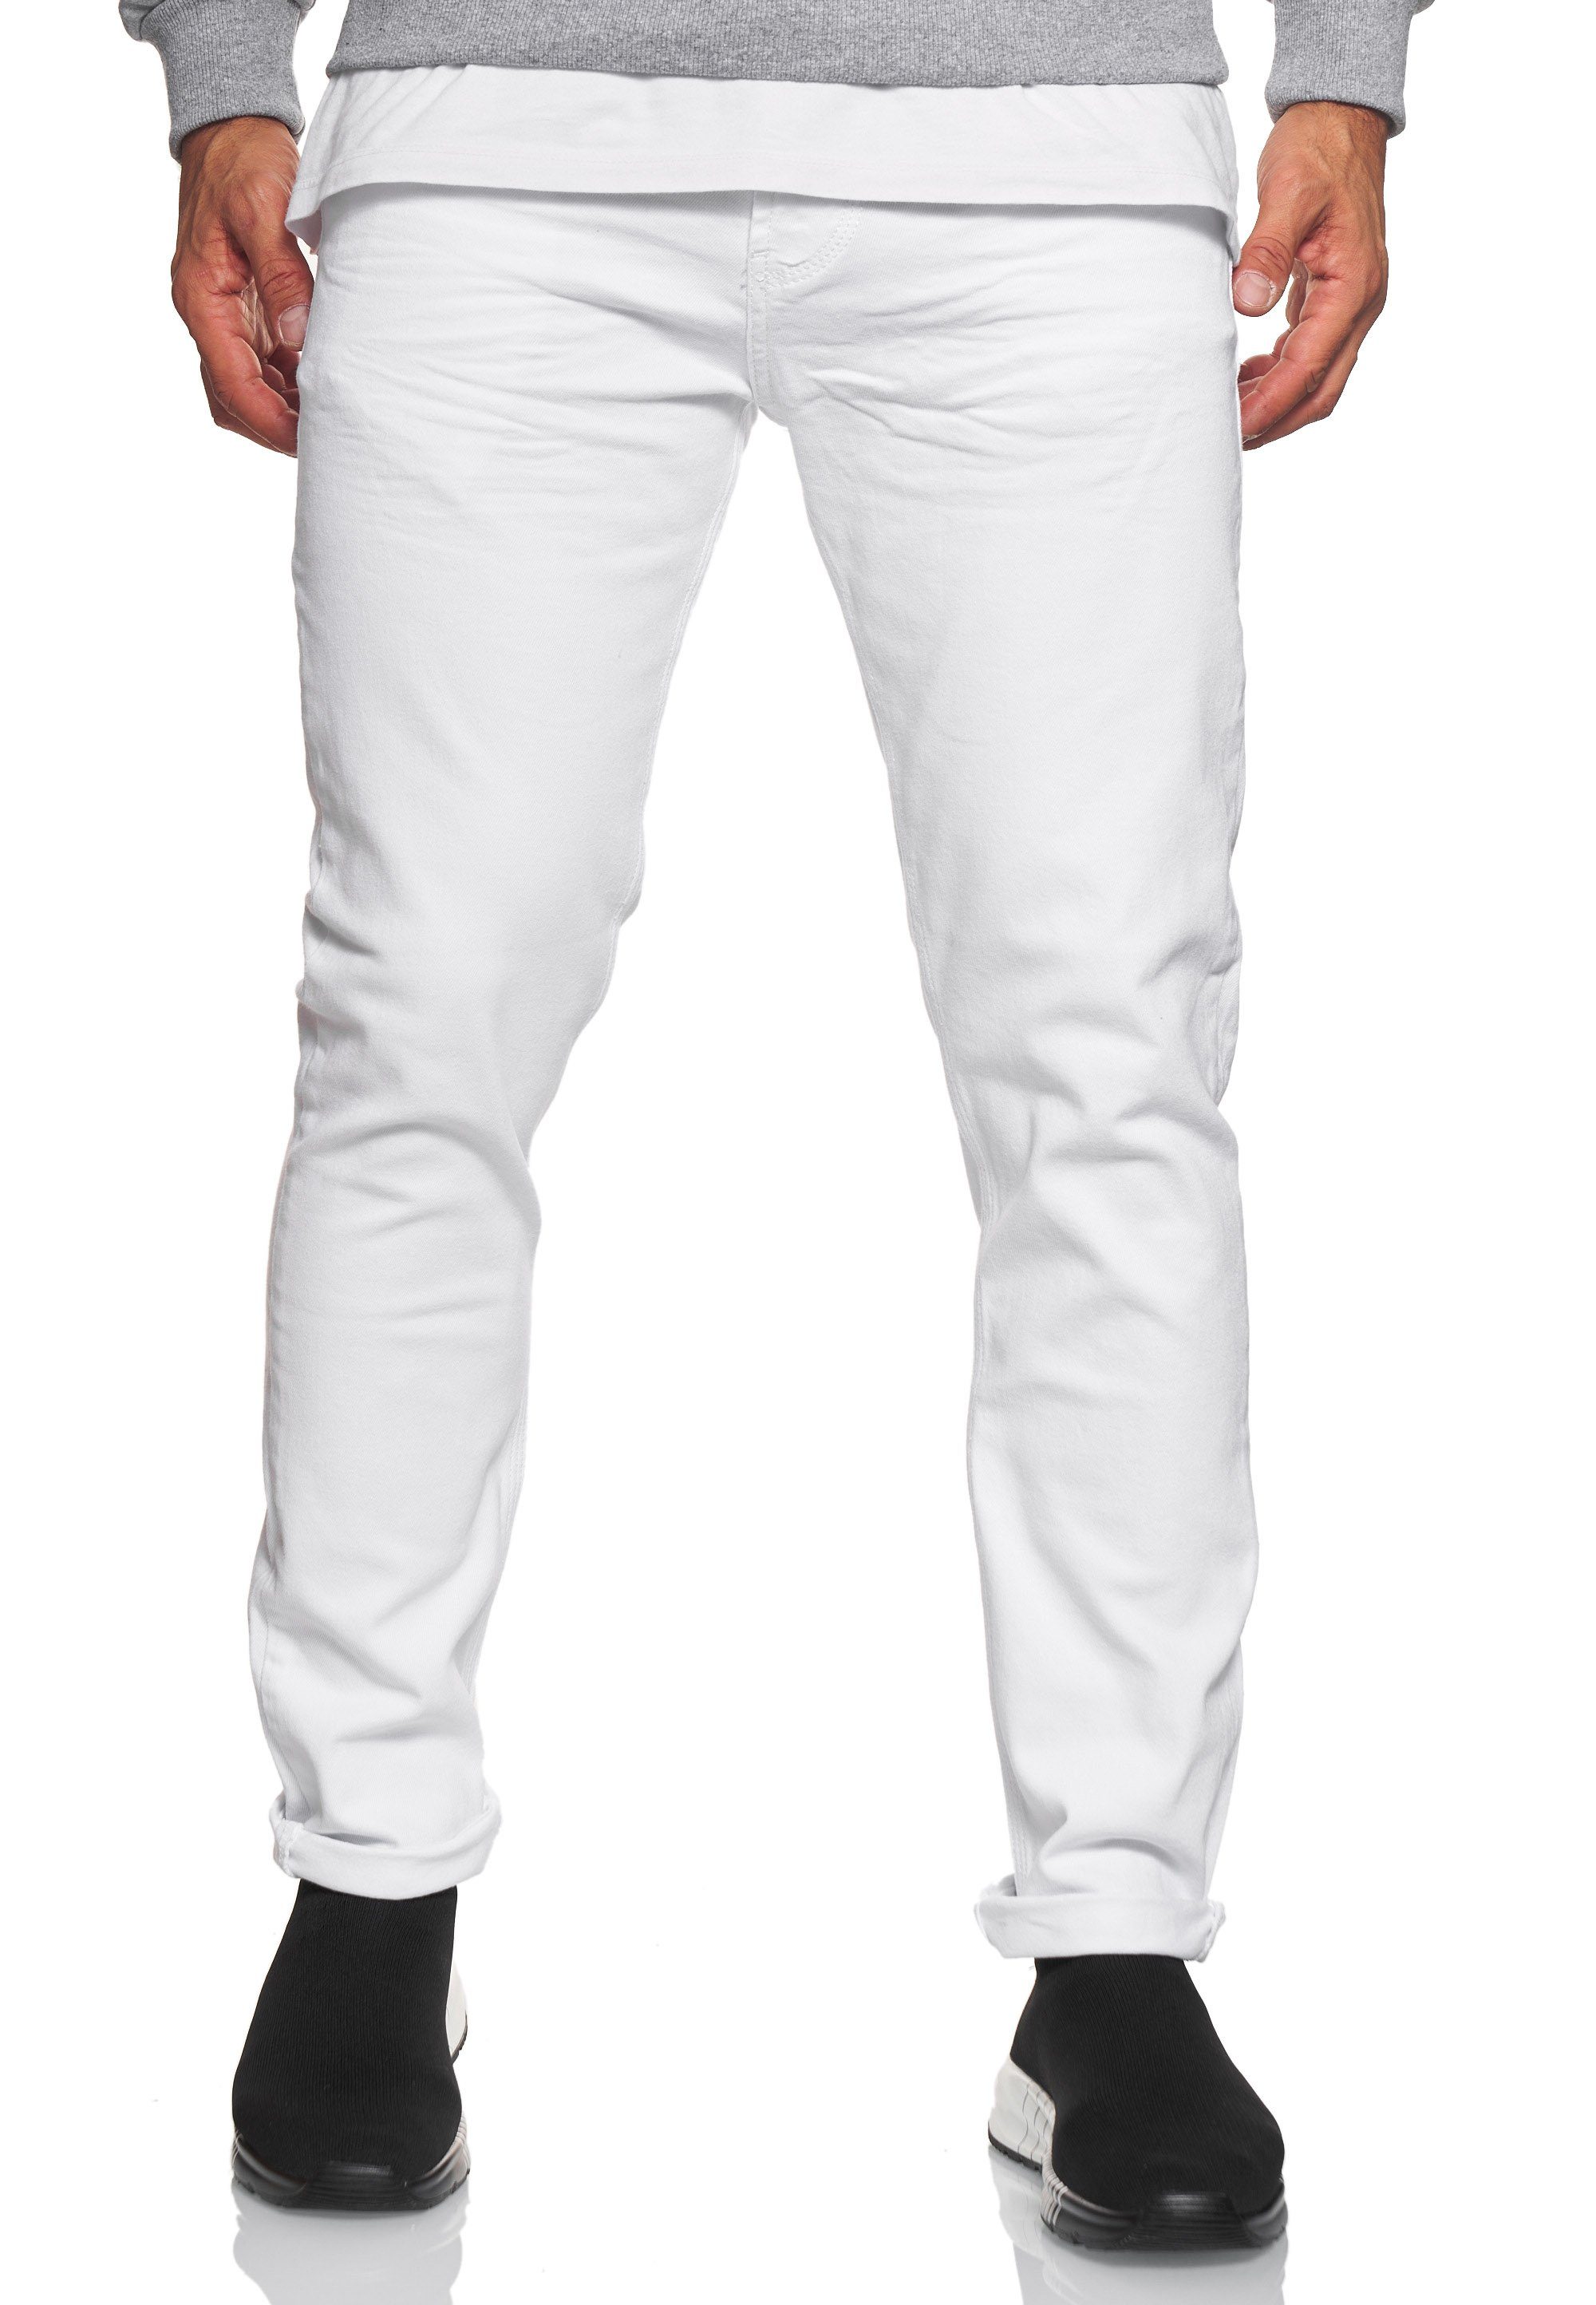 Rusty Neal Straight-Jeans MELVIN im klassischen 5-Pocket-Stil weiß